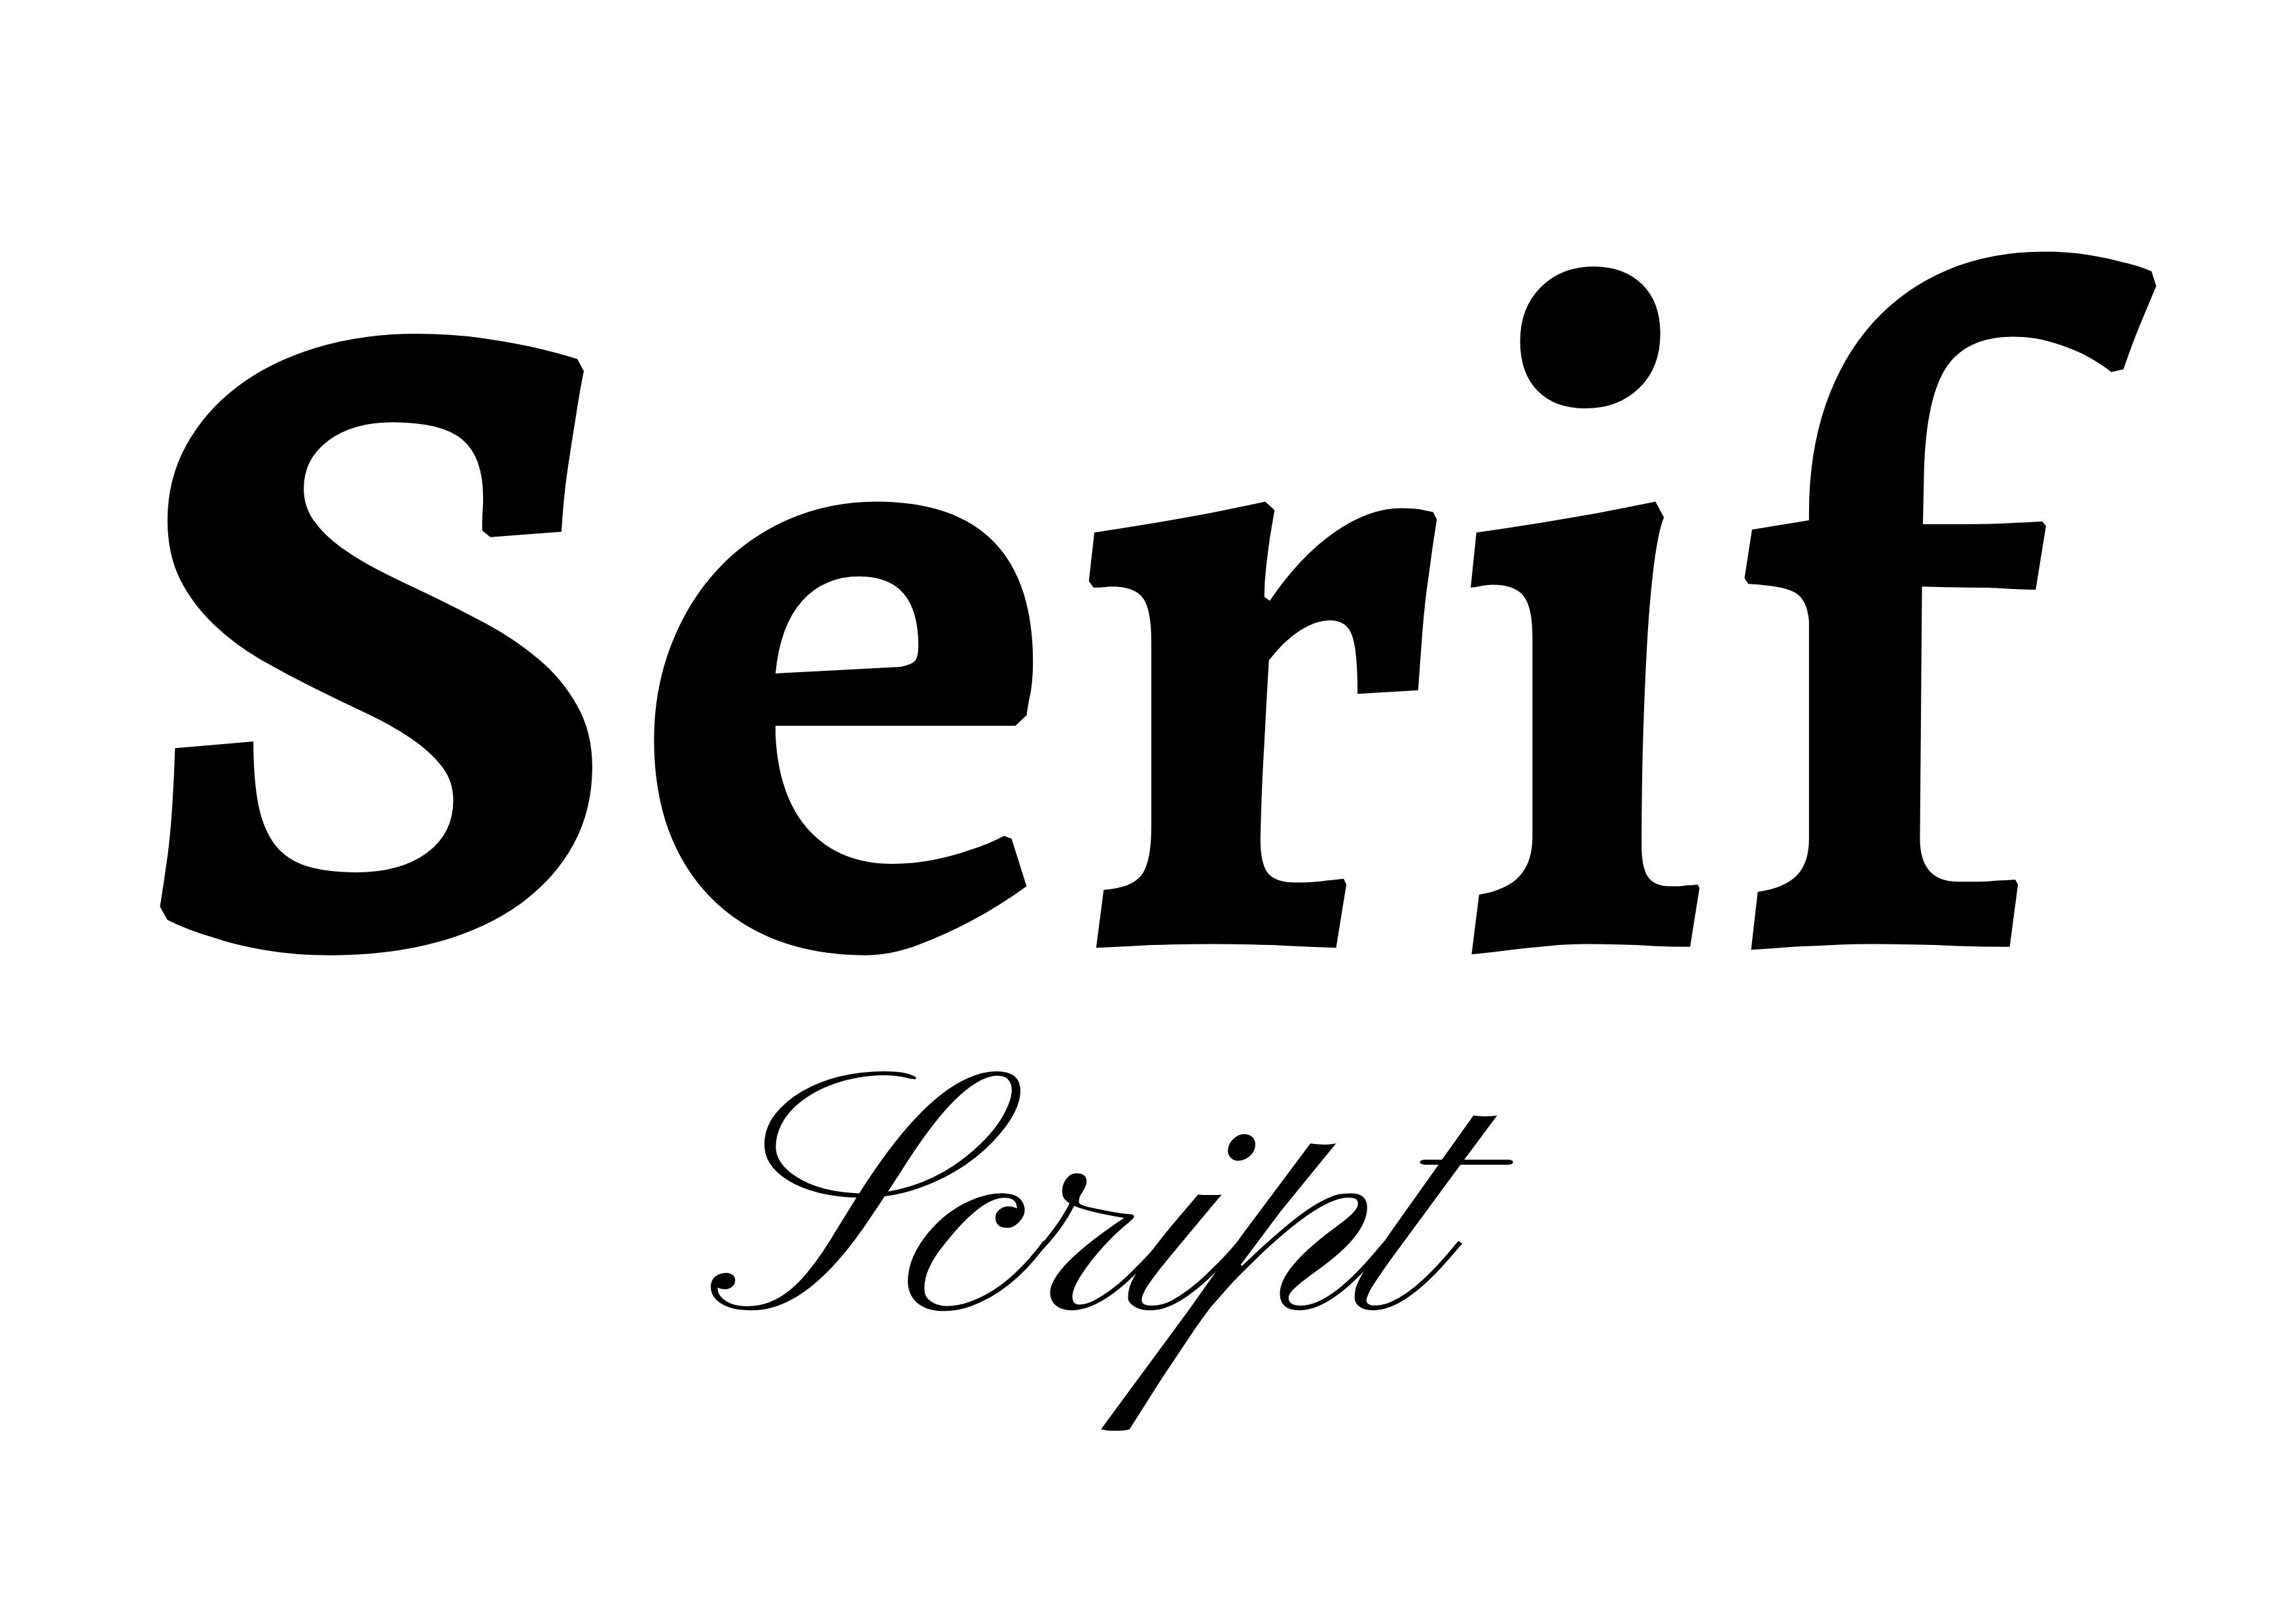 Schriftartenpaarung – „Serif“ in kräftigem Schwarz in der Mitte und „Script“ in Schwarz darunter kleiner